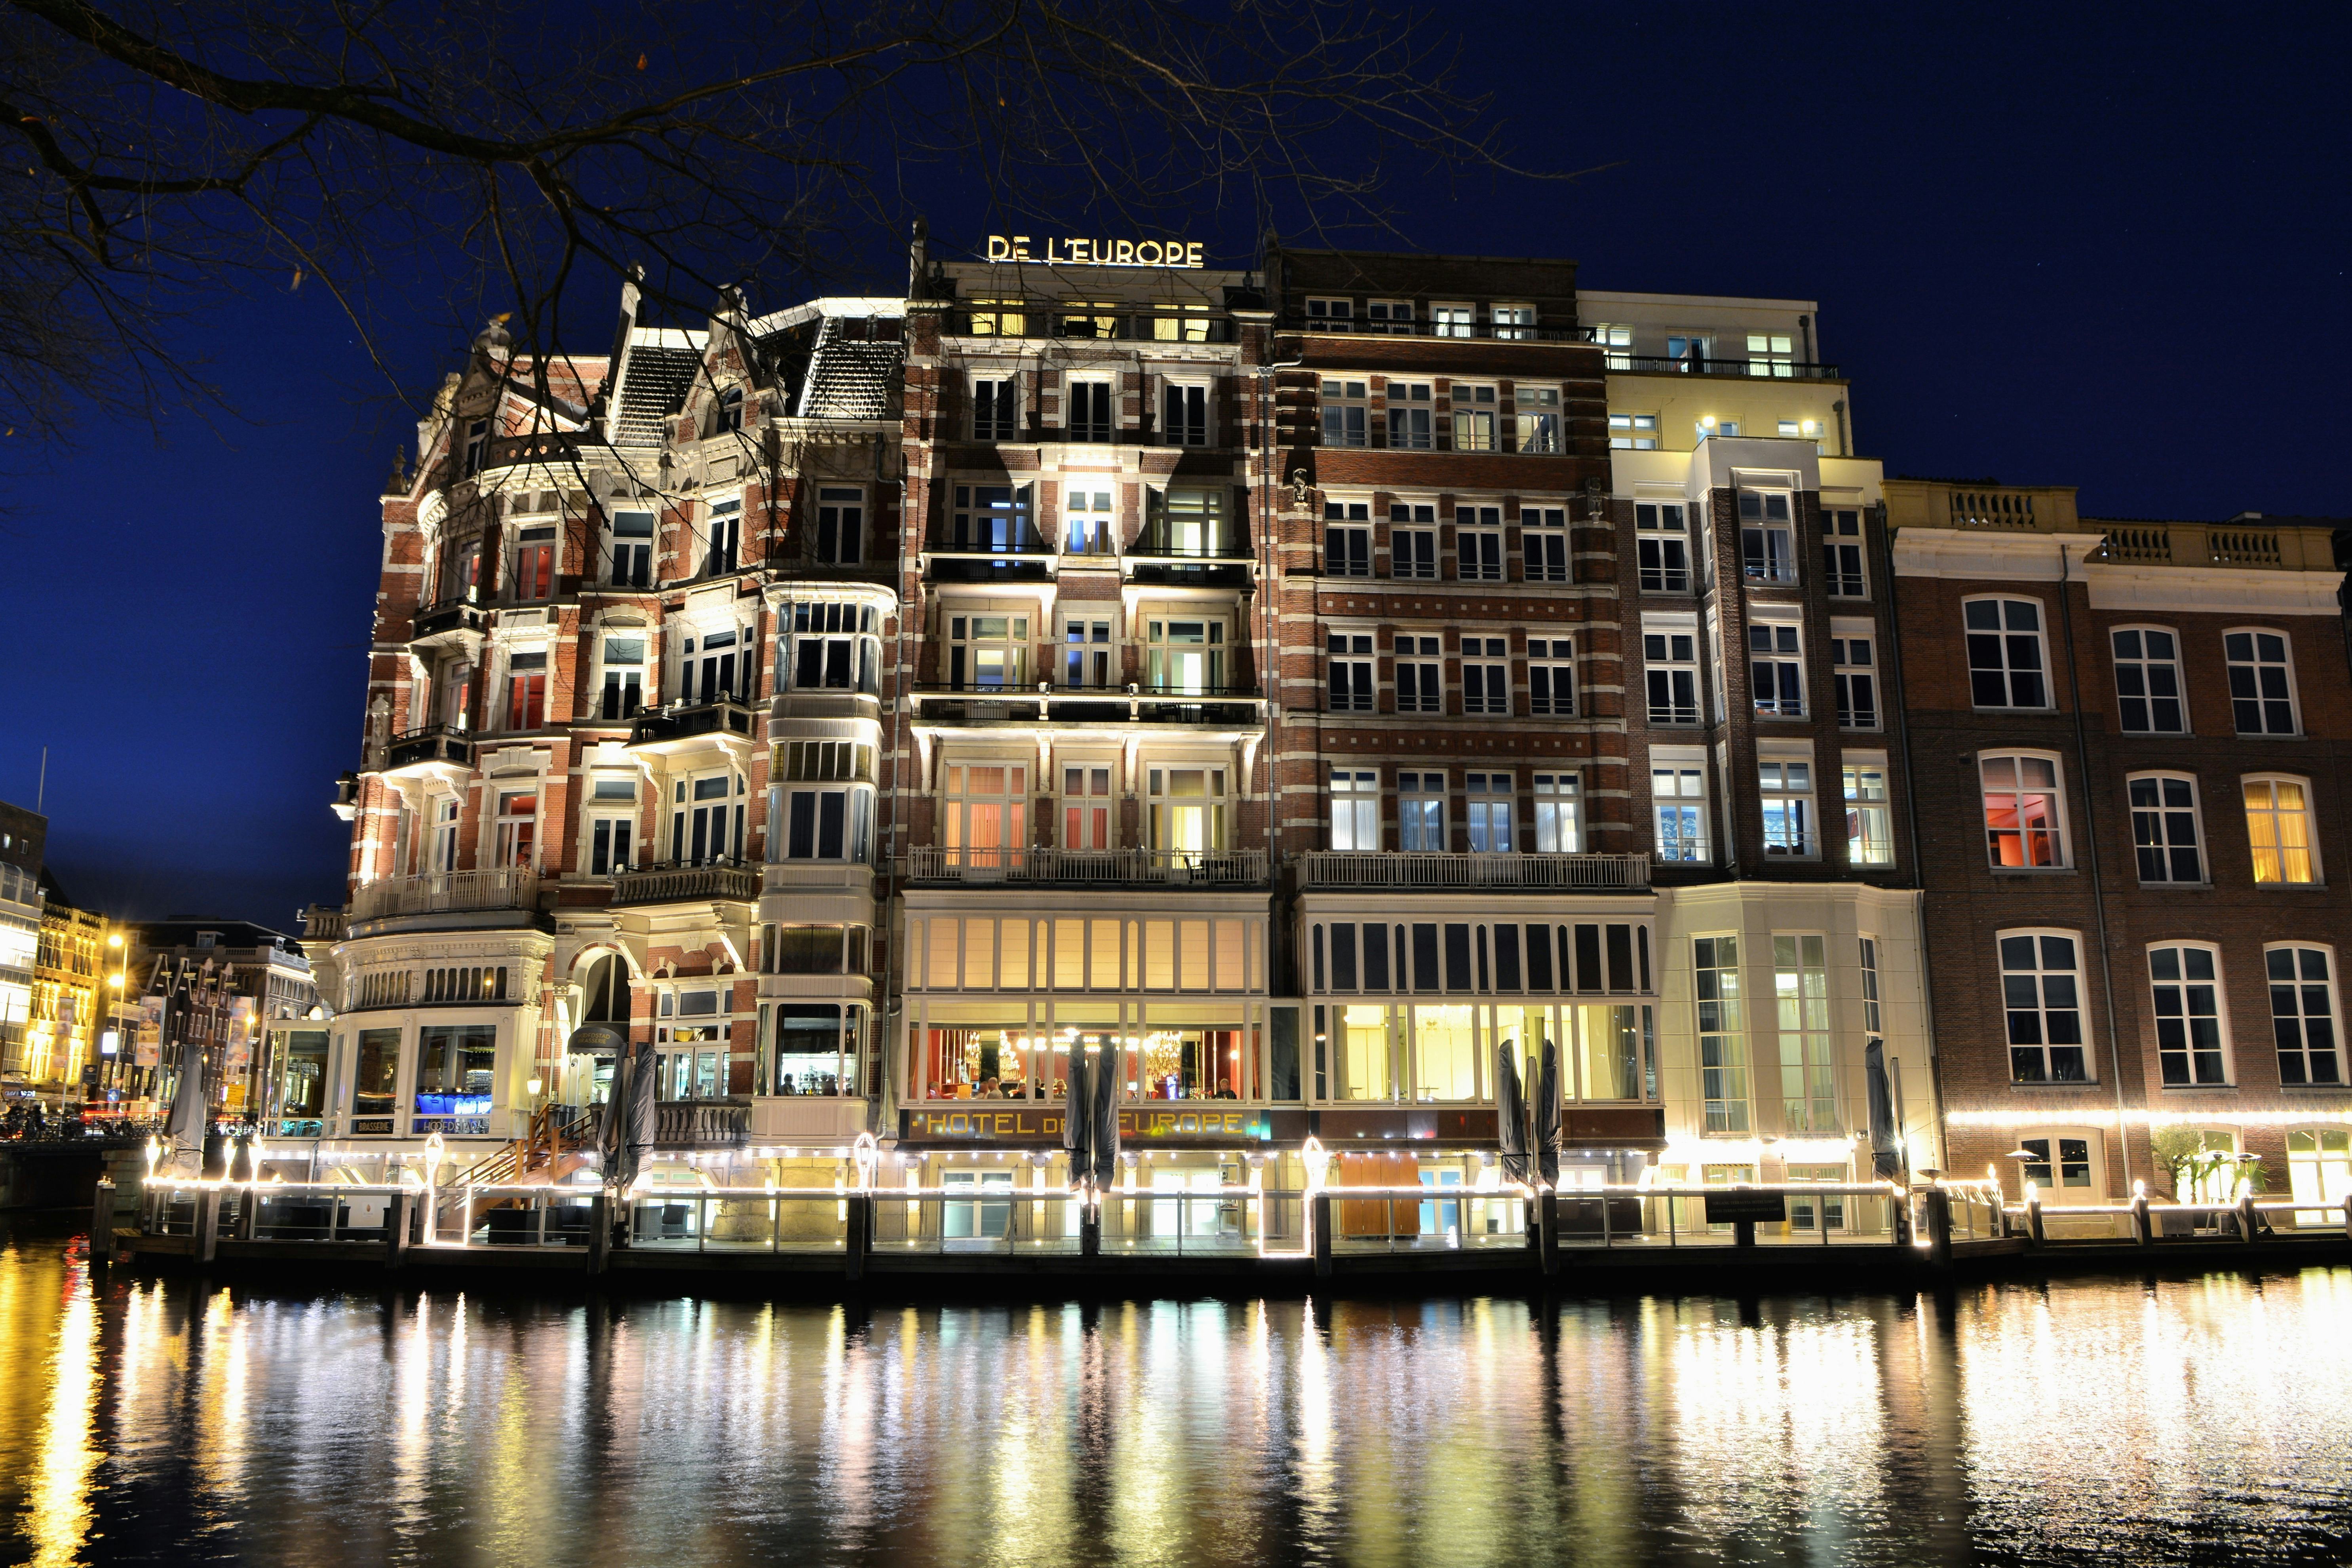 Hotel De L'Europe opent 't Huys: Amsterdamse kunst, stijl en luxe